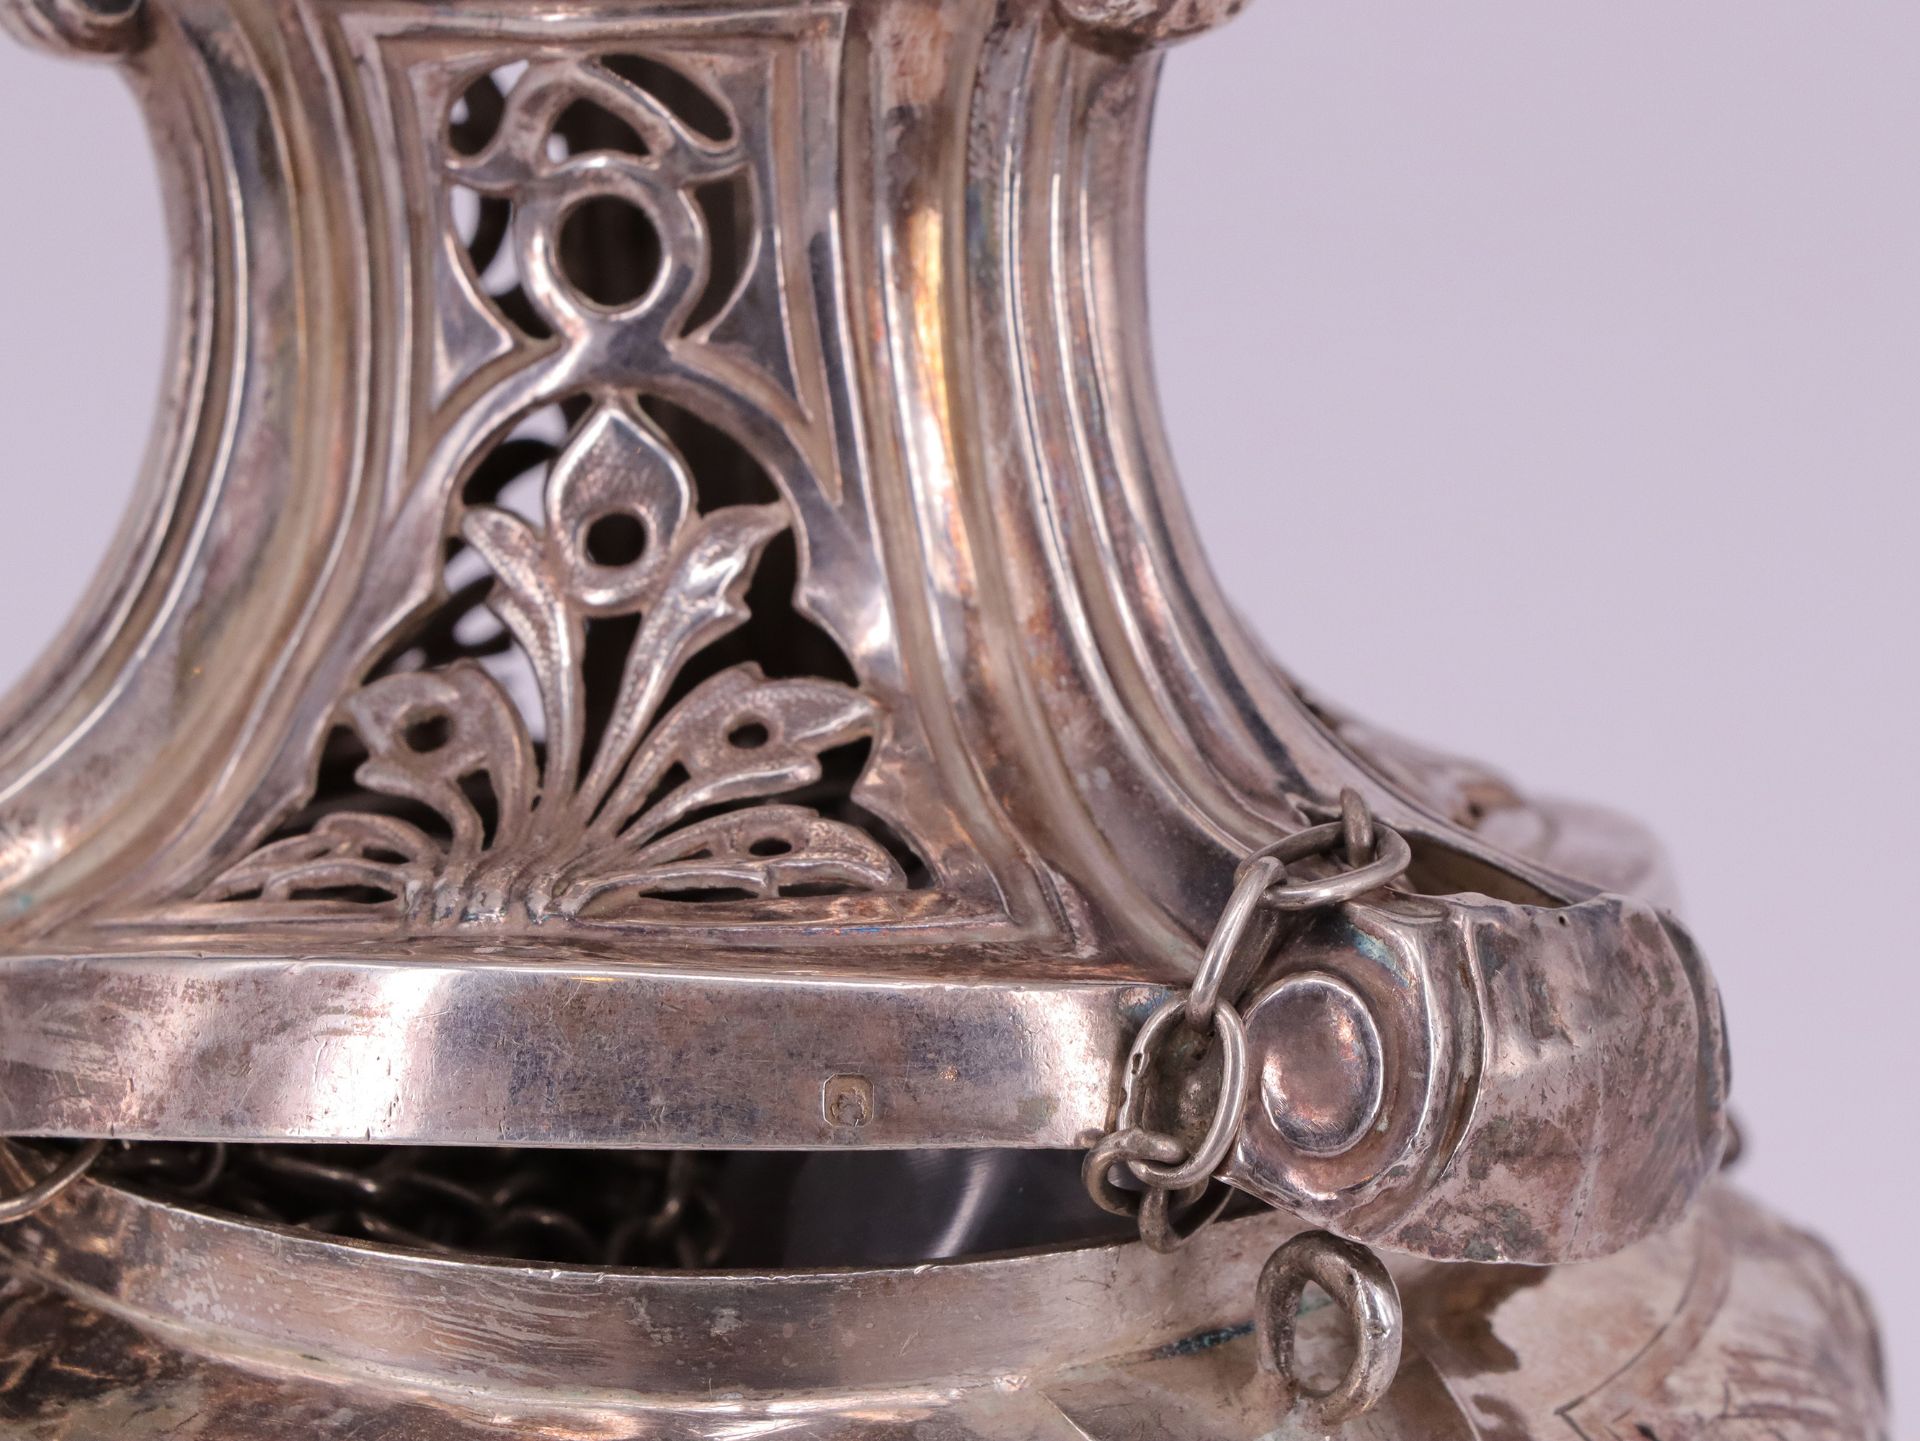 Weihrauchschwenker, Räuchergefäß, Silber, gepunzt, H 27 cm, 588gr / Incense burner, silver, - Image 3 of 5